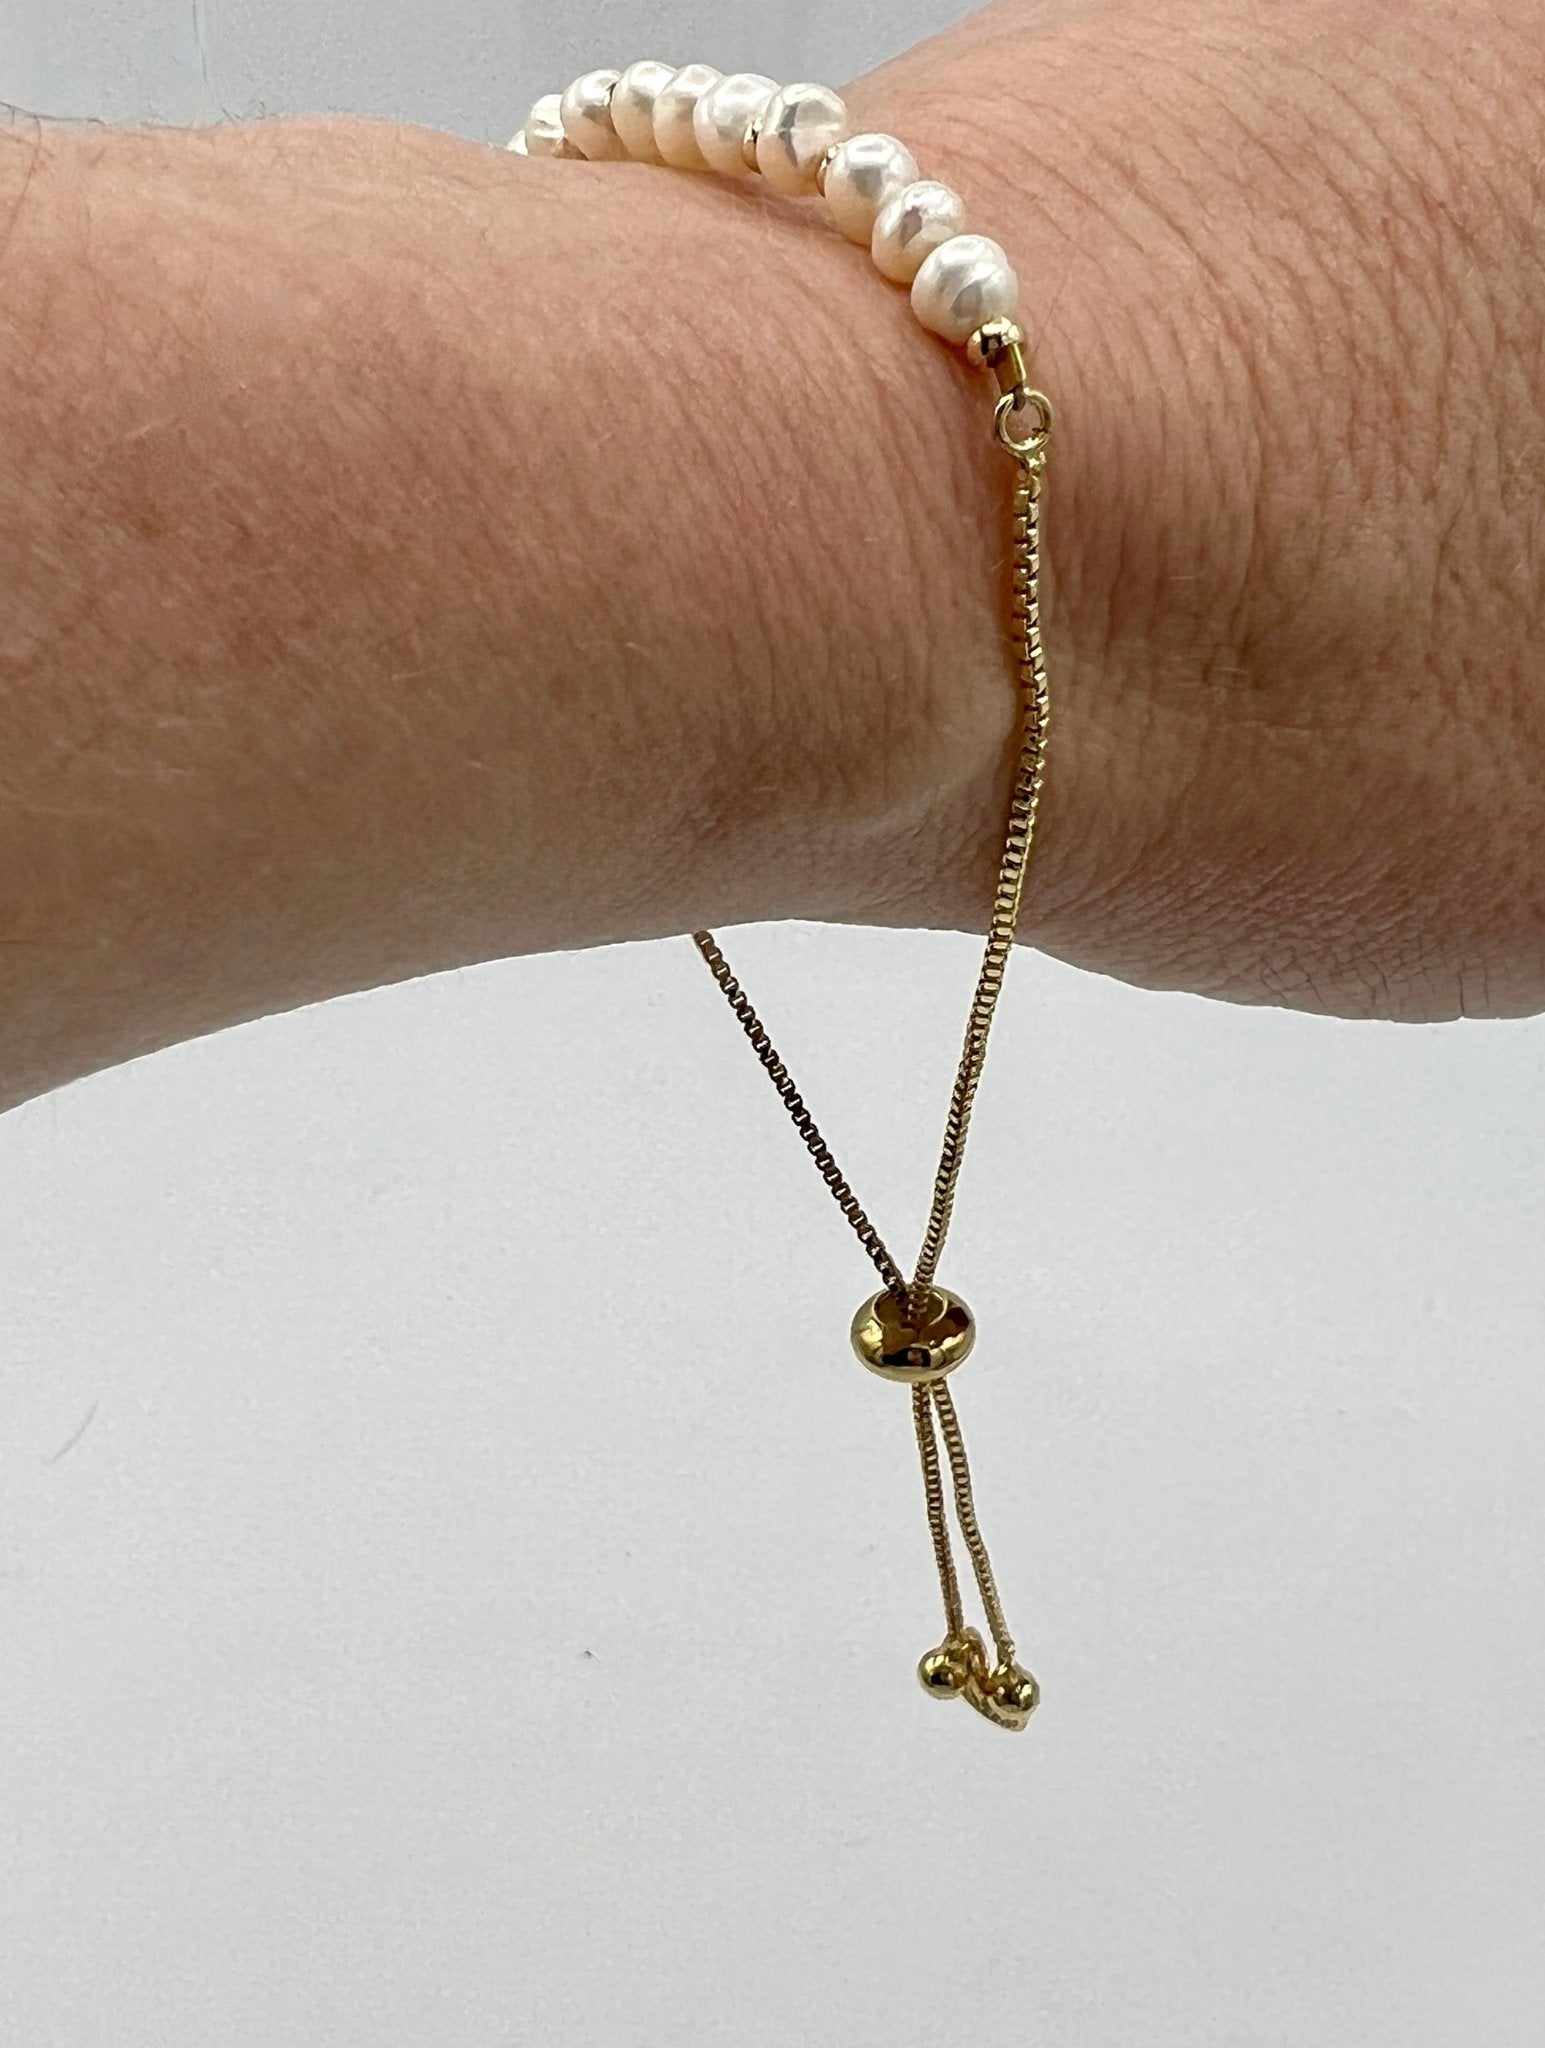 Delicate chainlink bracelet with fresh water pearls - Sundara Joon